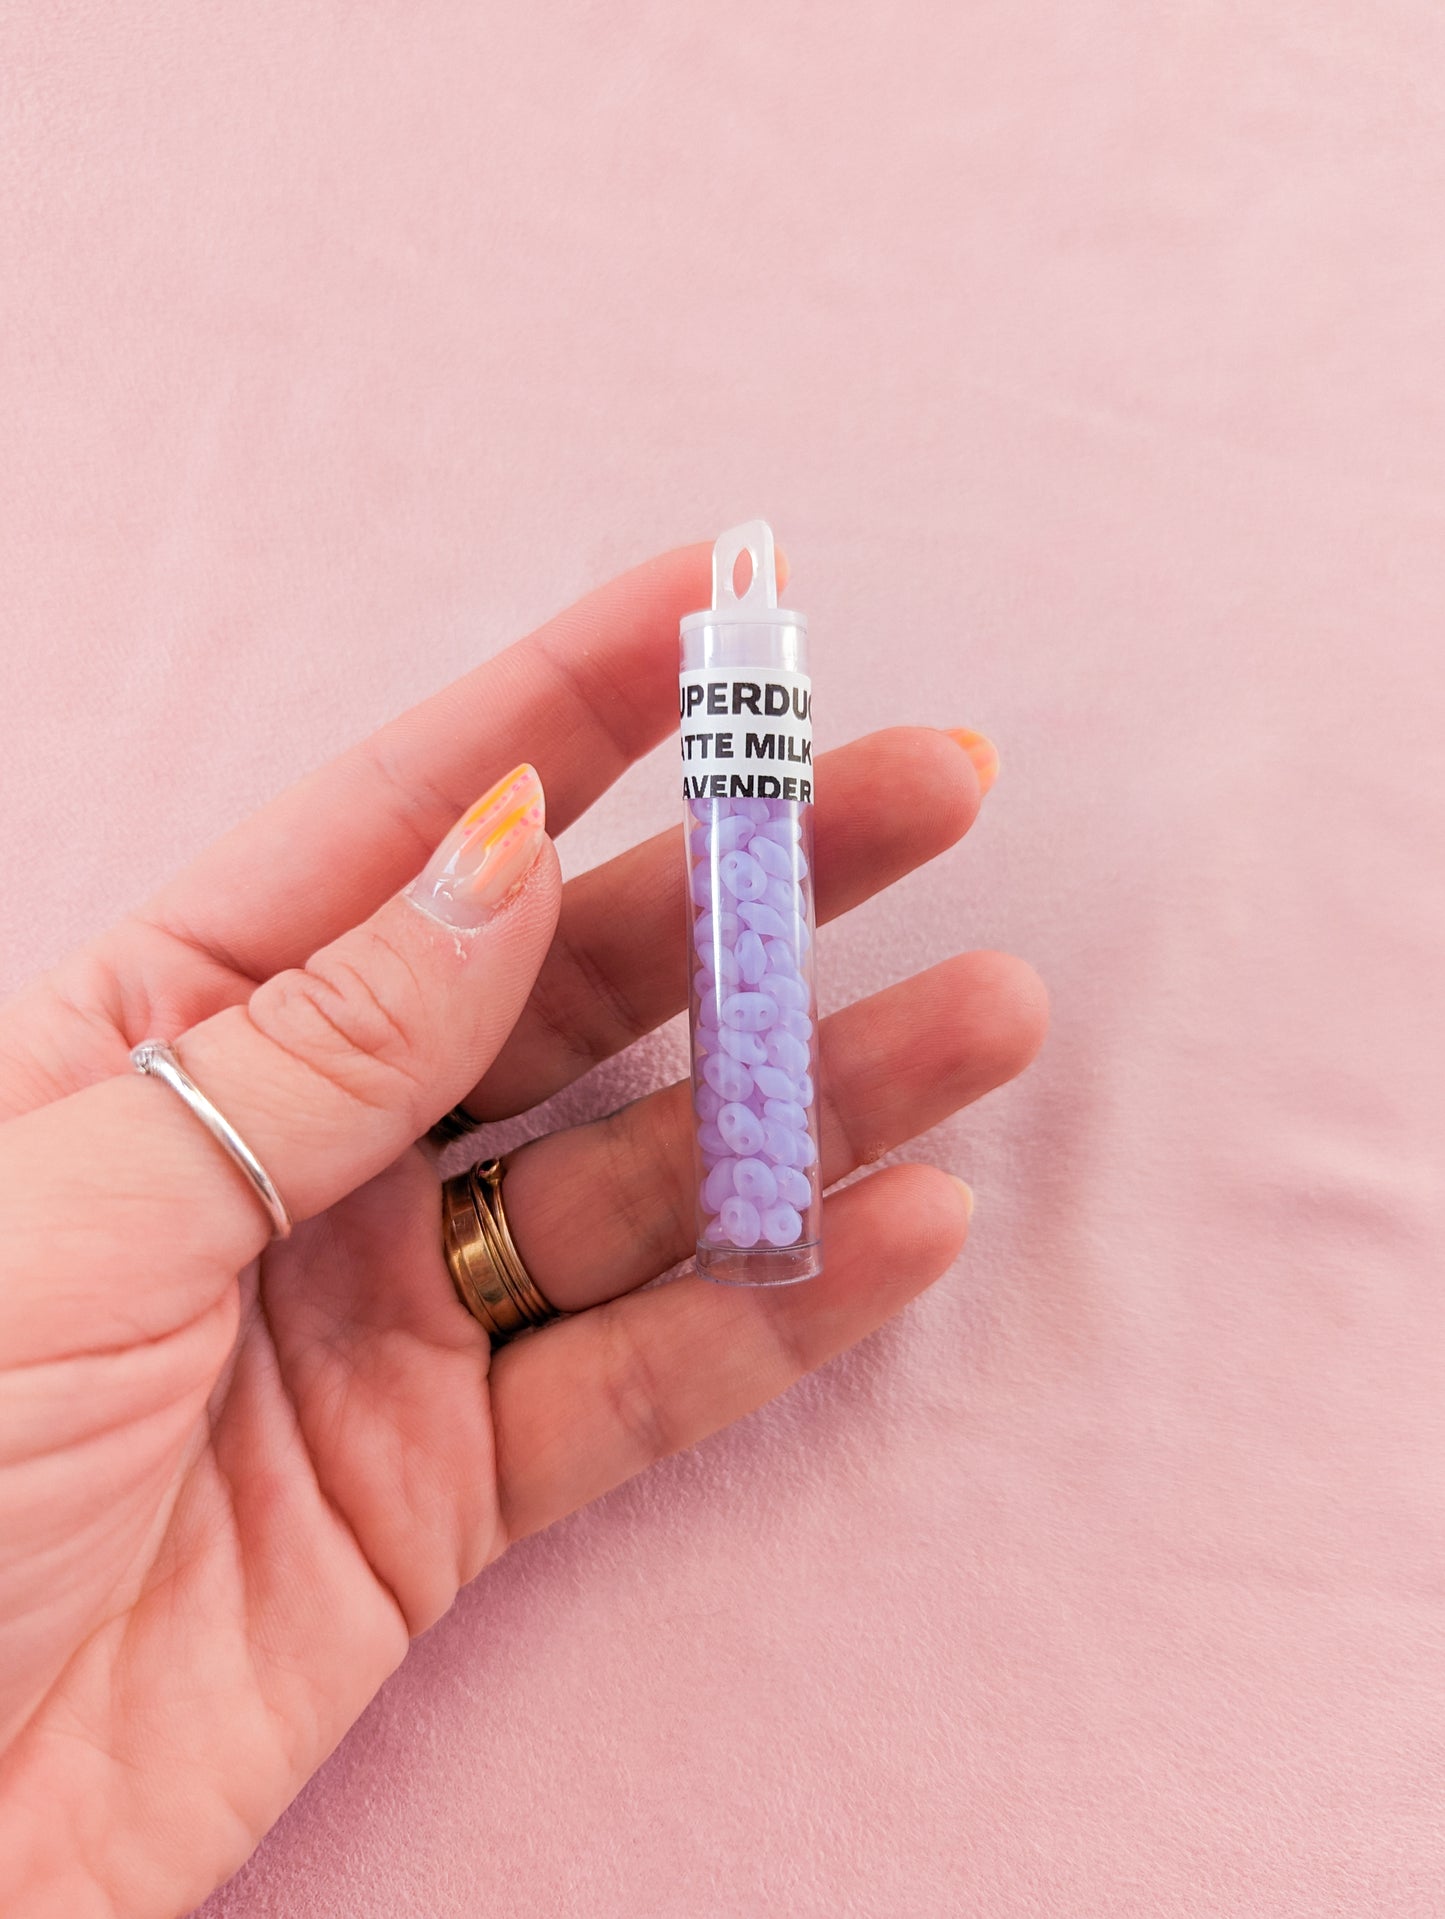 Matte Milky Lavender - SuperDuo - 7.5 gram tube